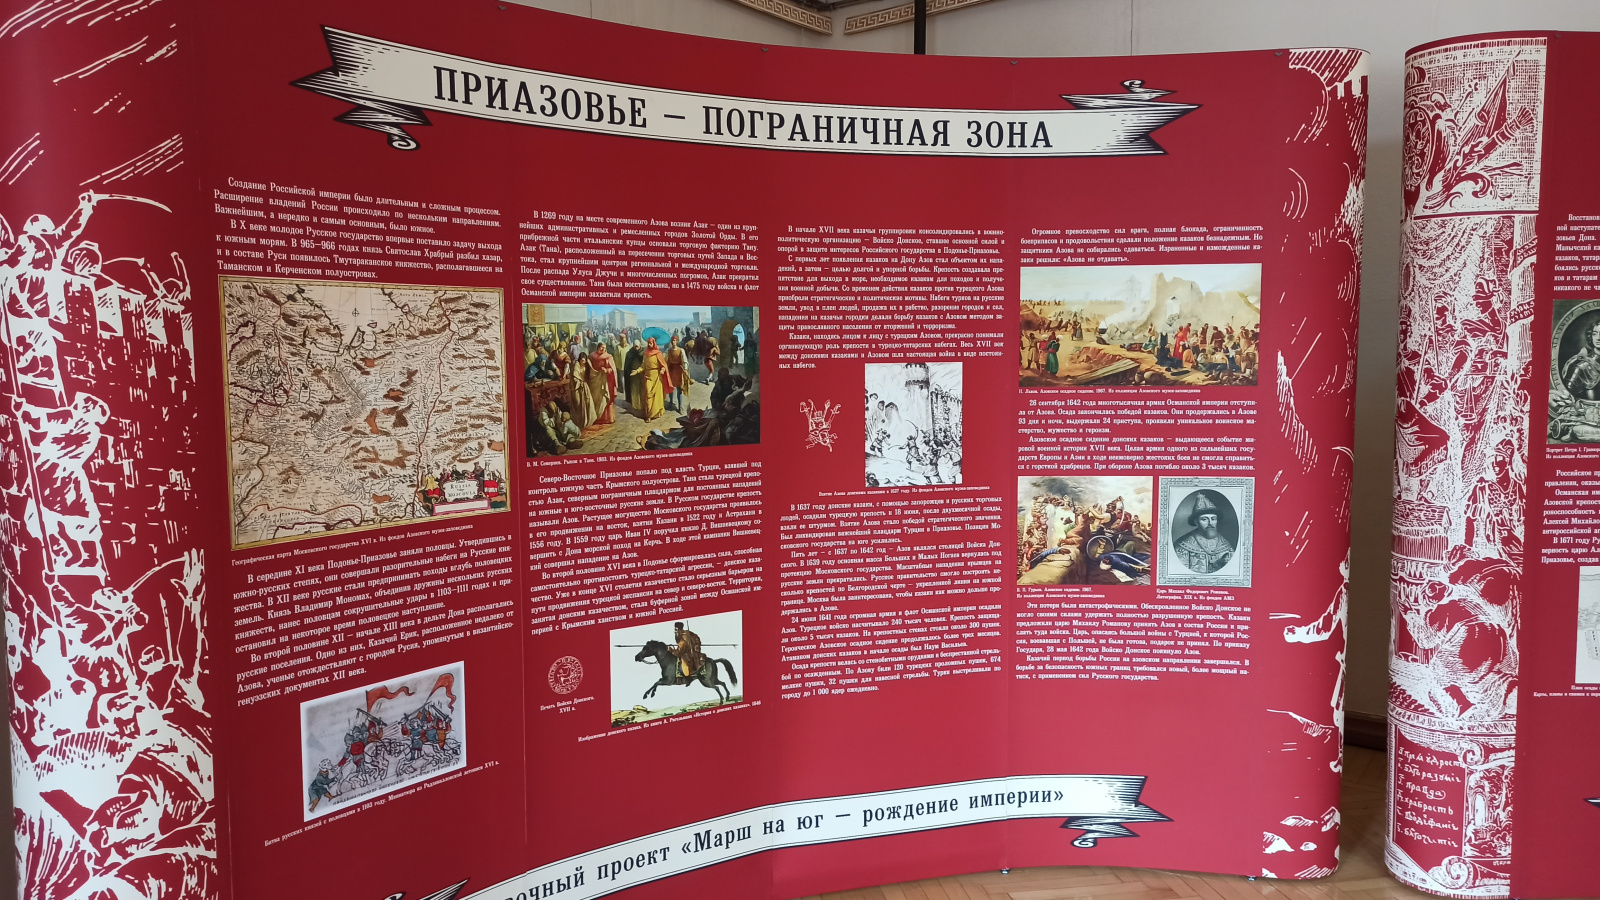 В Феодосийском музее древностей открылась выставка «Марш на юг – рождение империи»